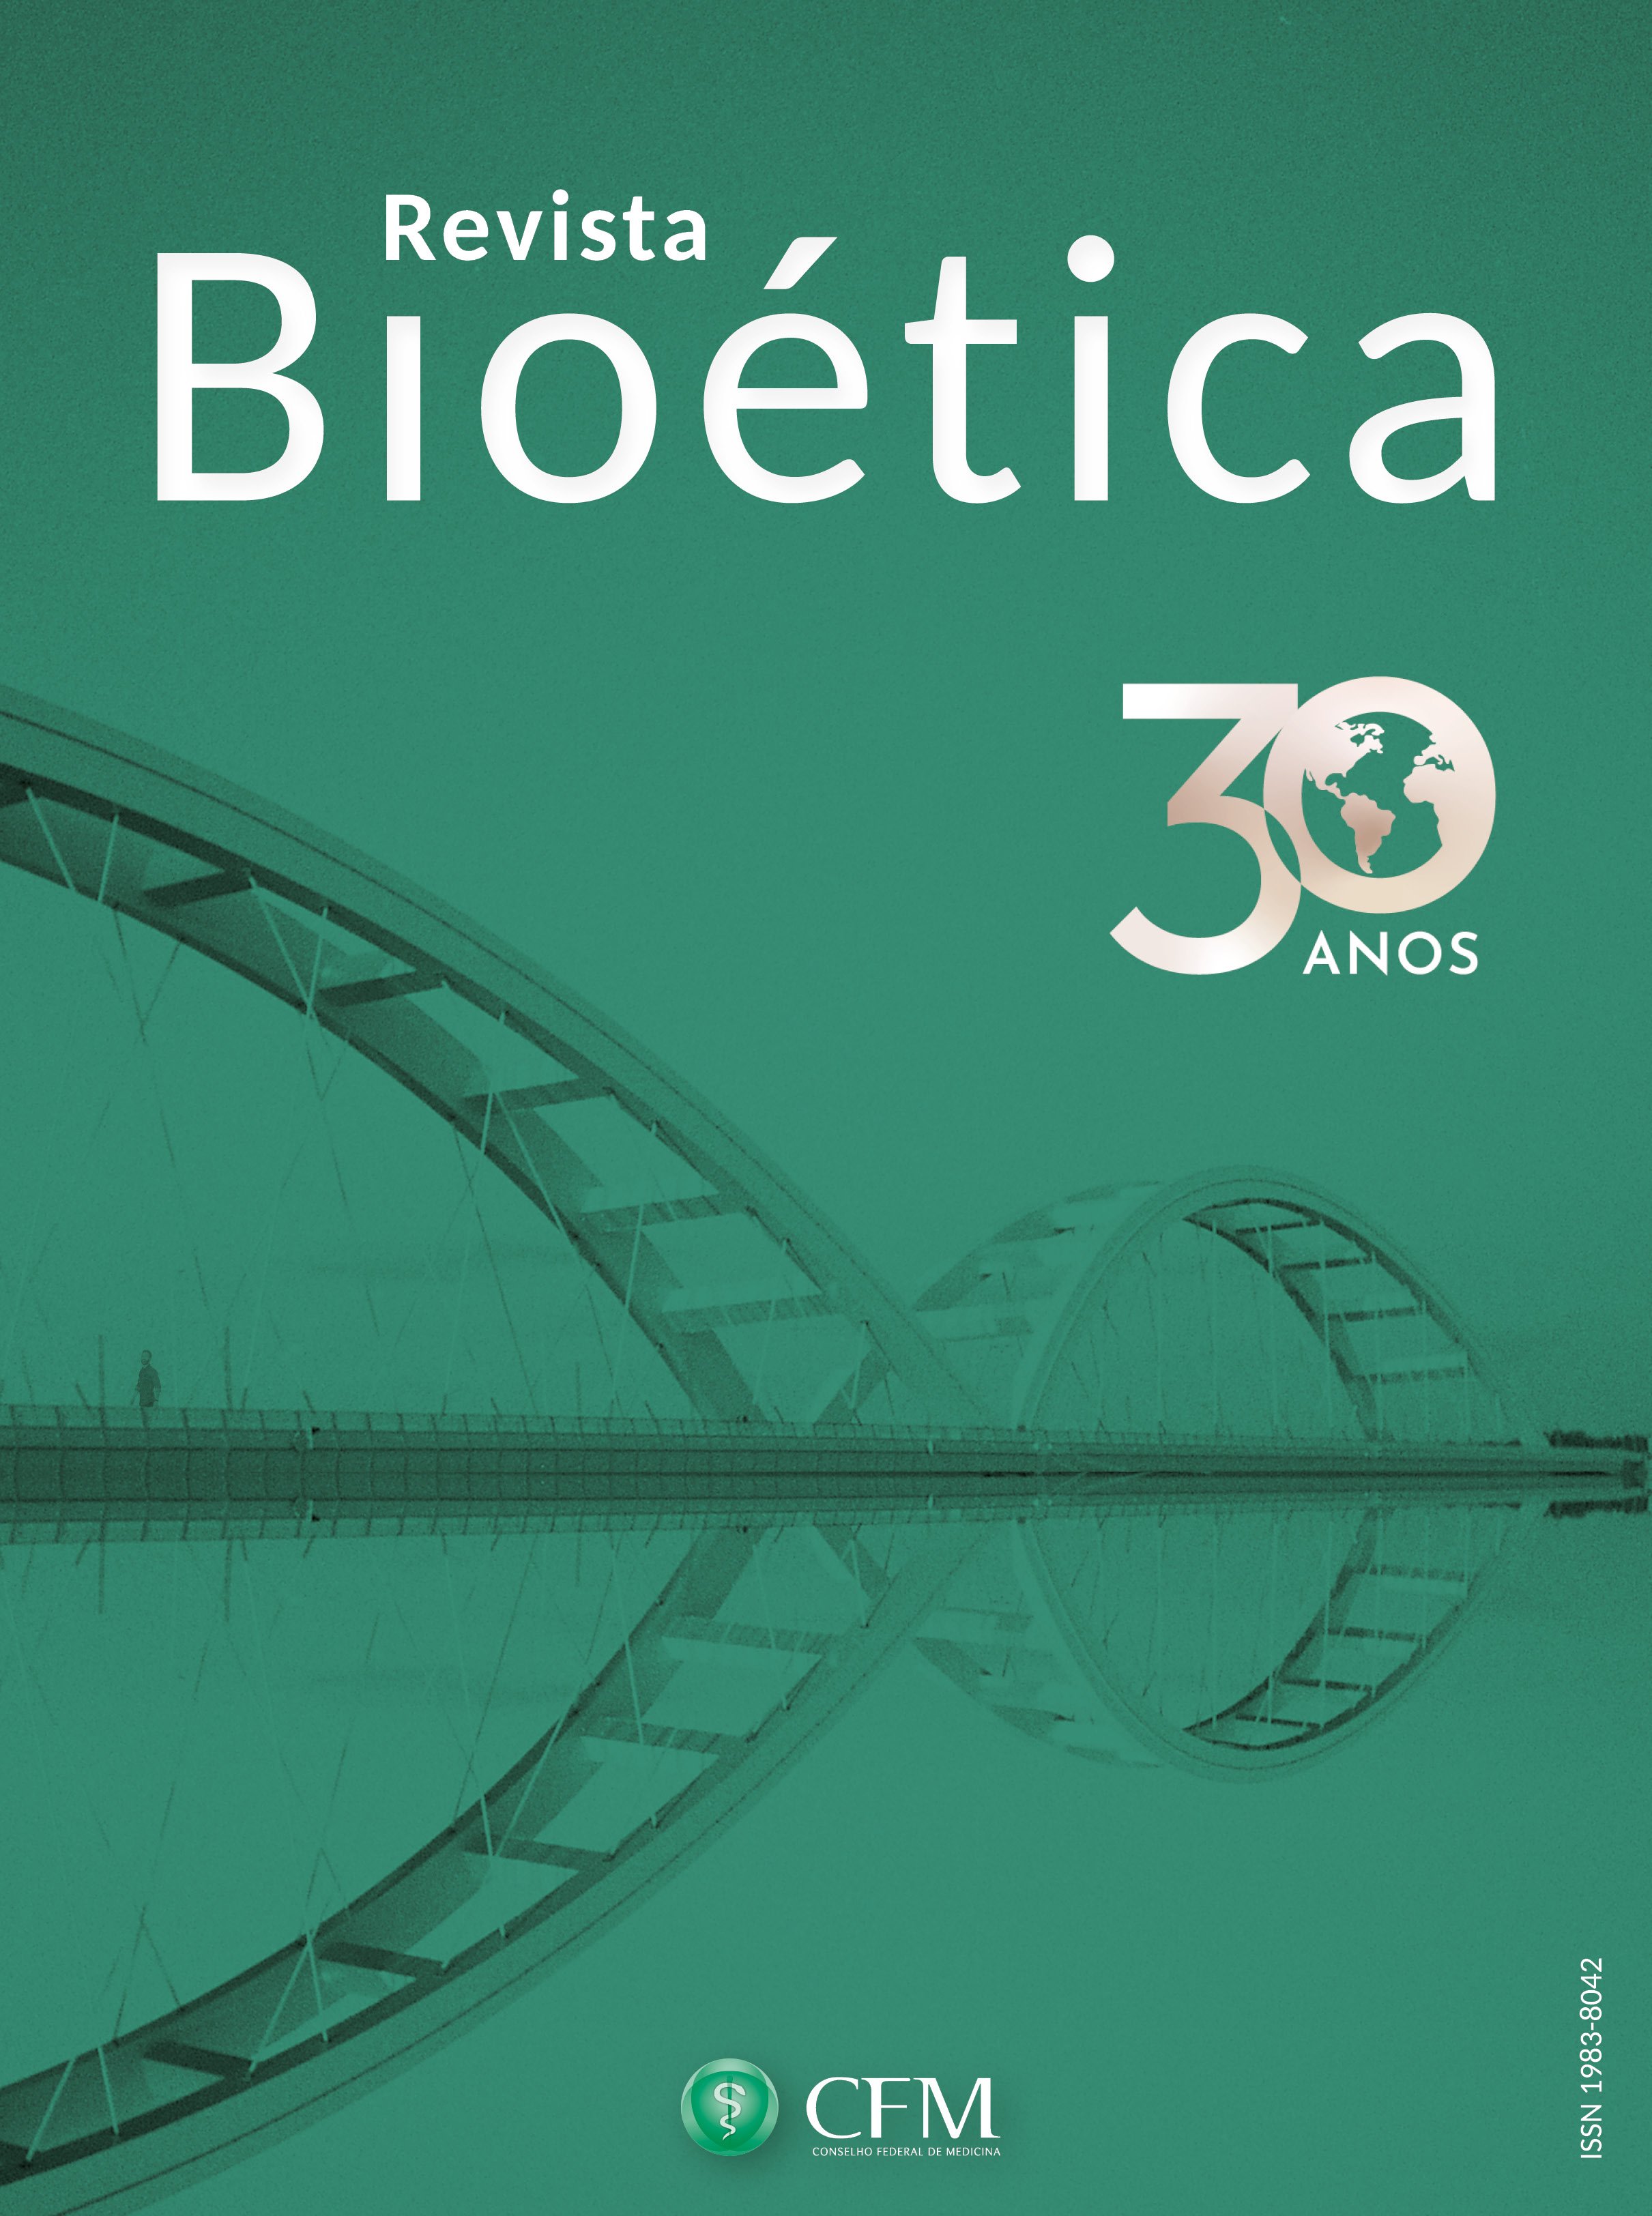 Logomarca do periódico: Revista Bioética